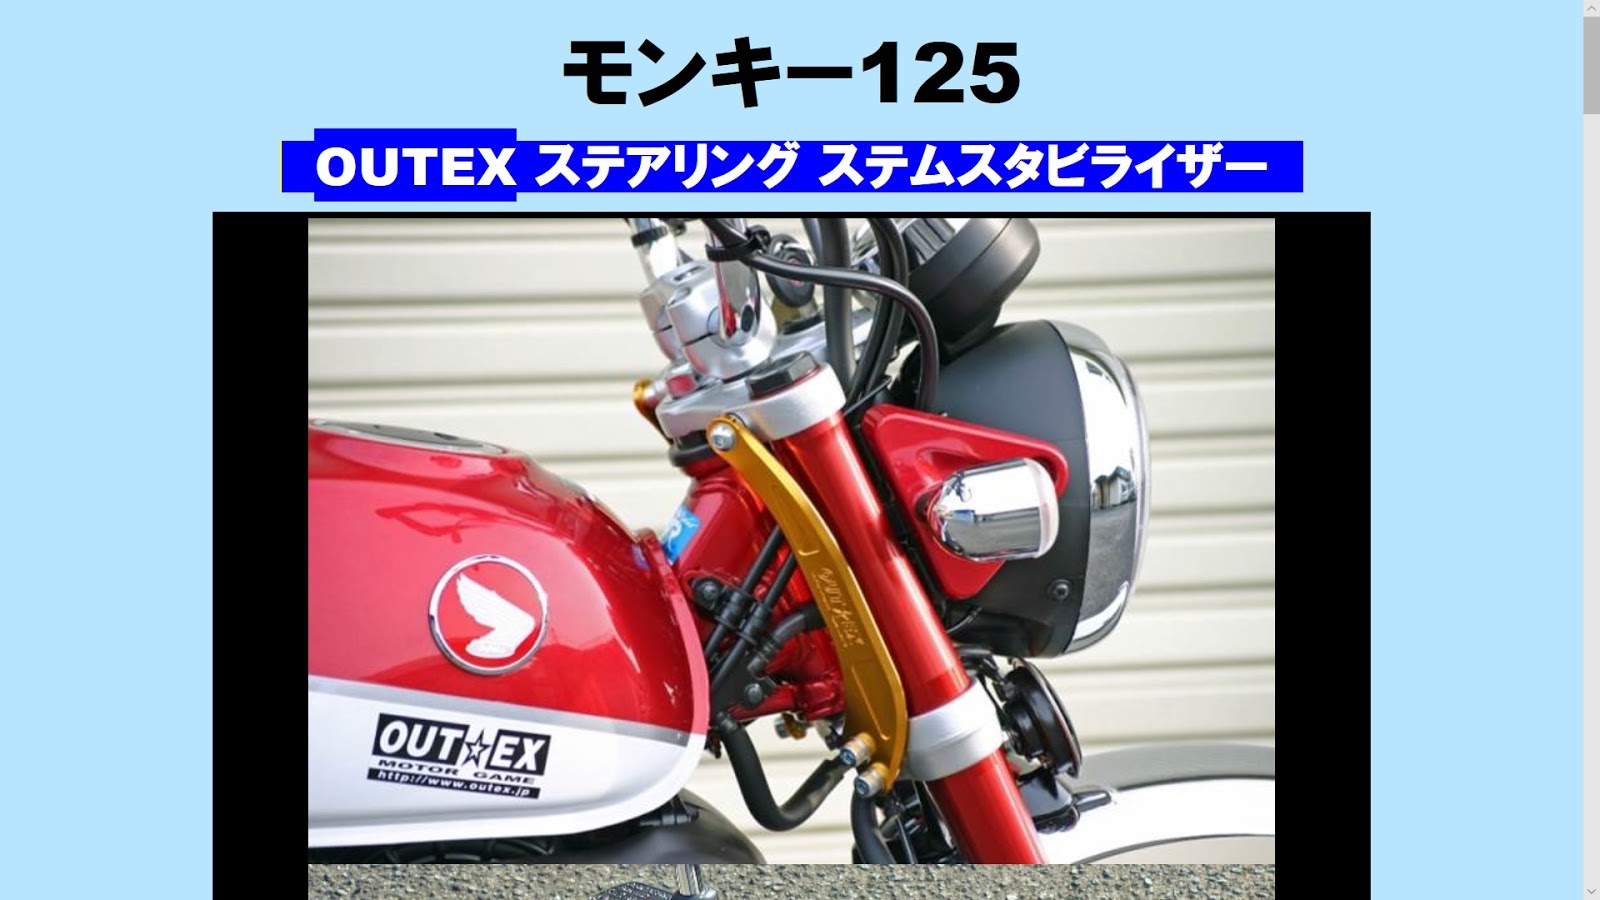 blueskyfuji: ホンダ モンキー125 OUTEX ステアリングステム 